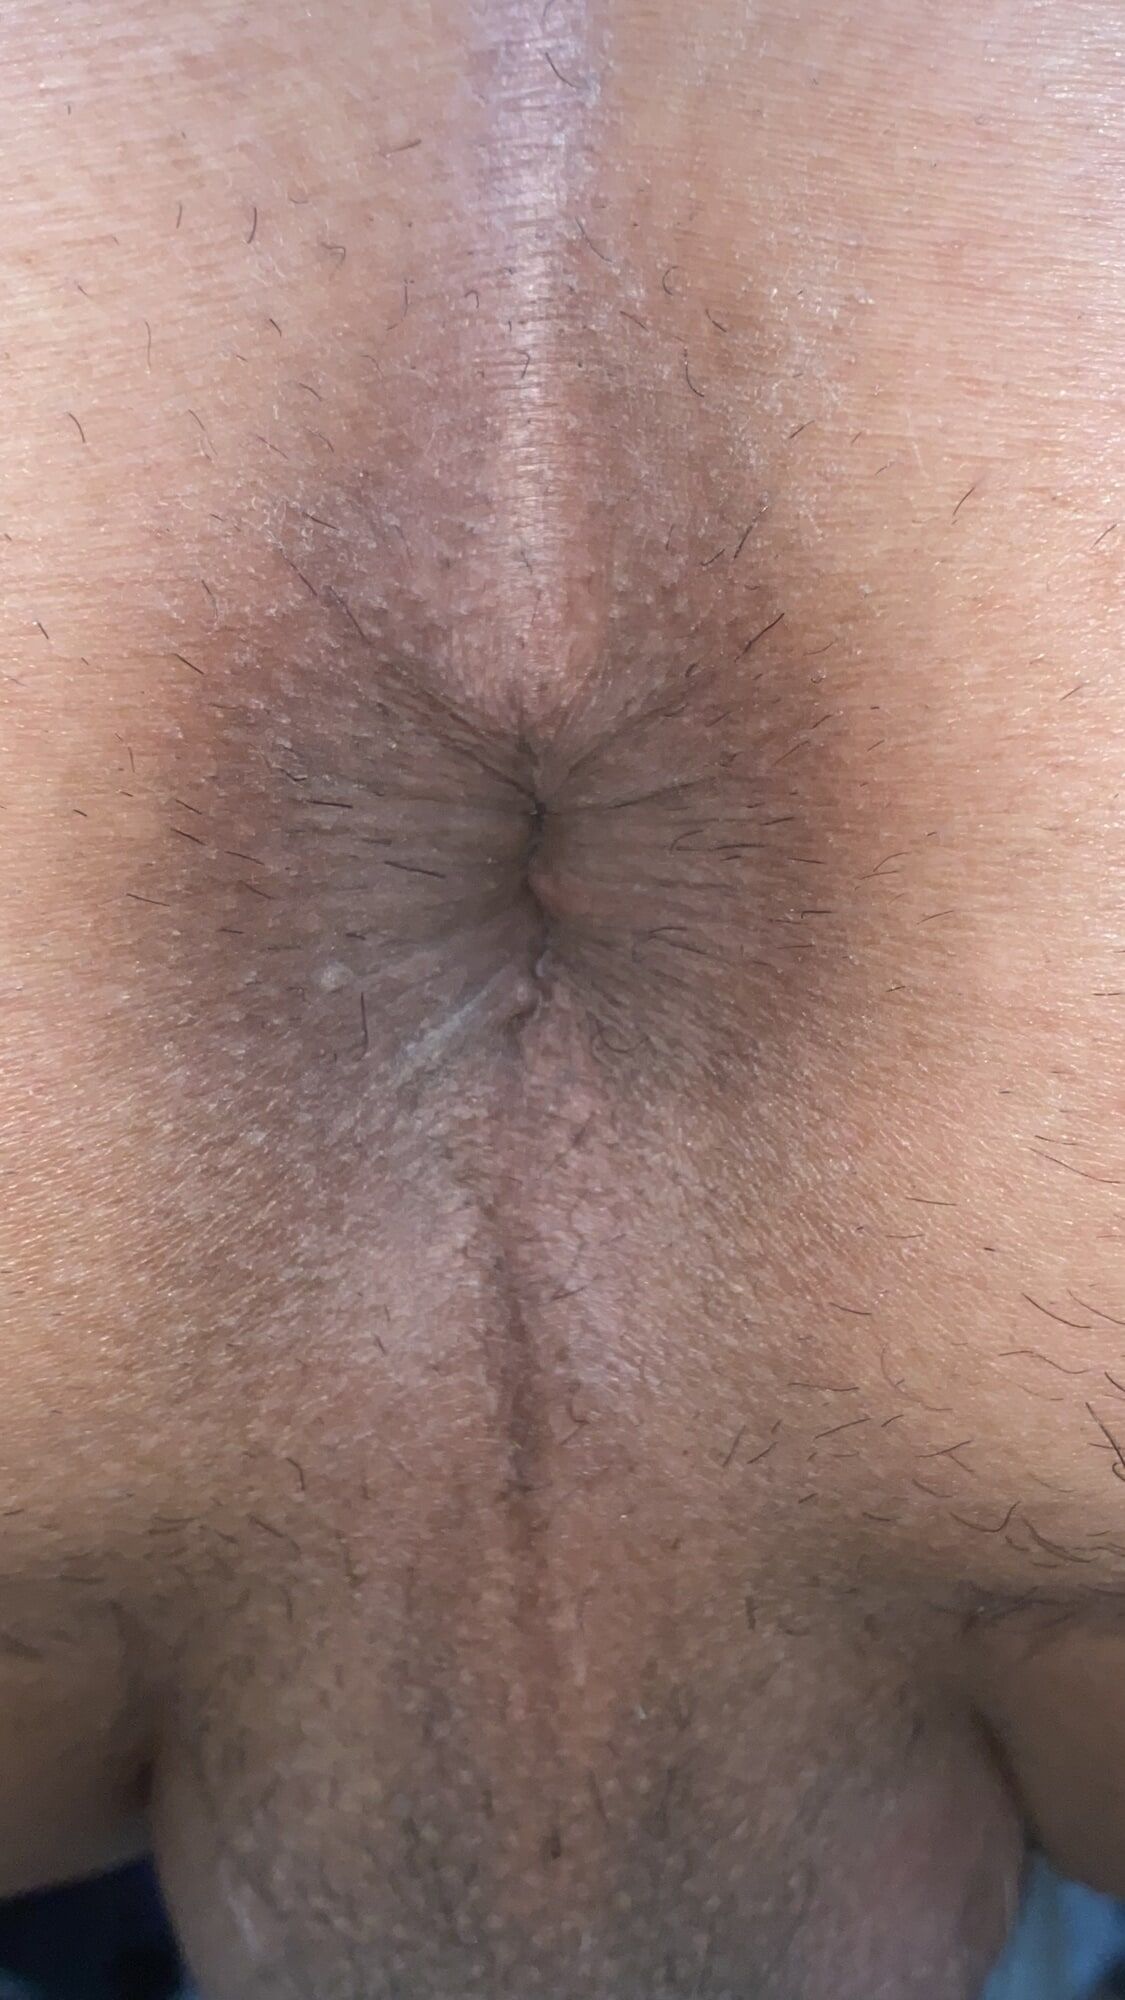 Close-up of a man's anus #54